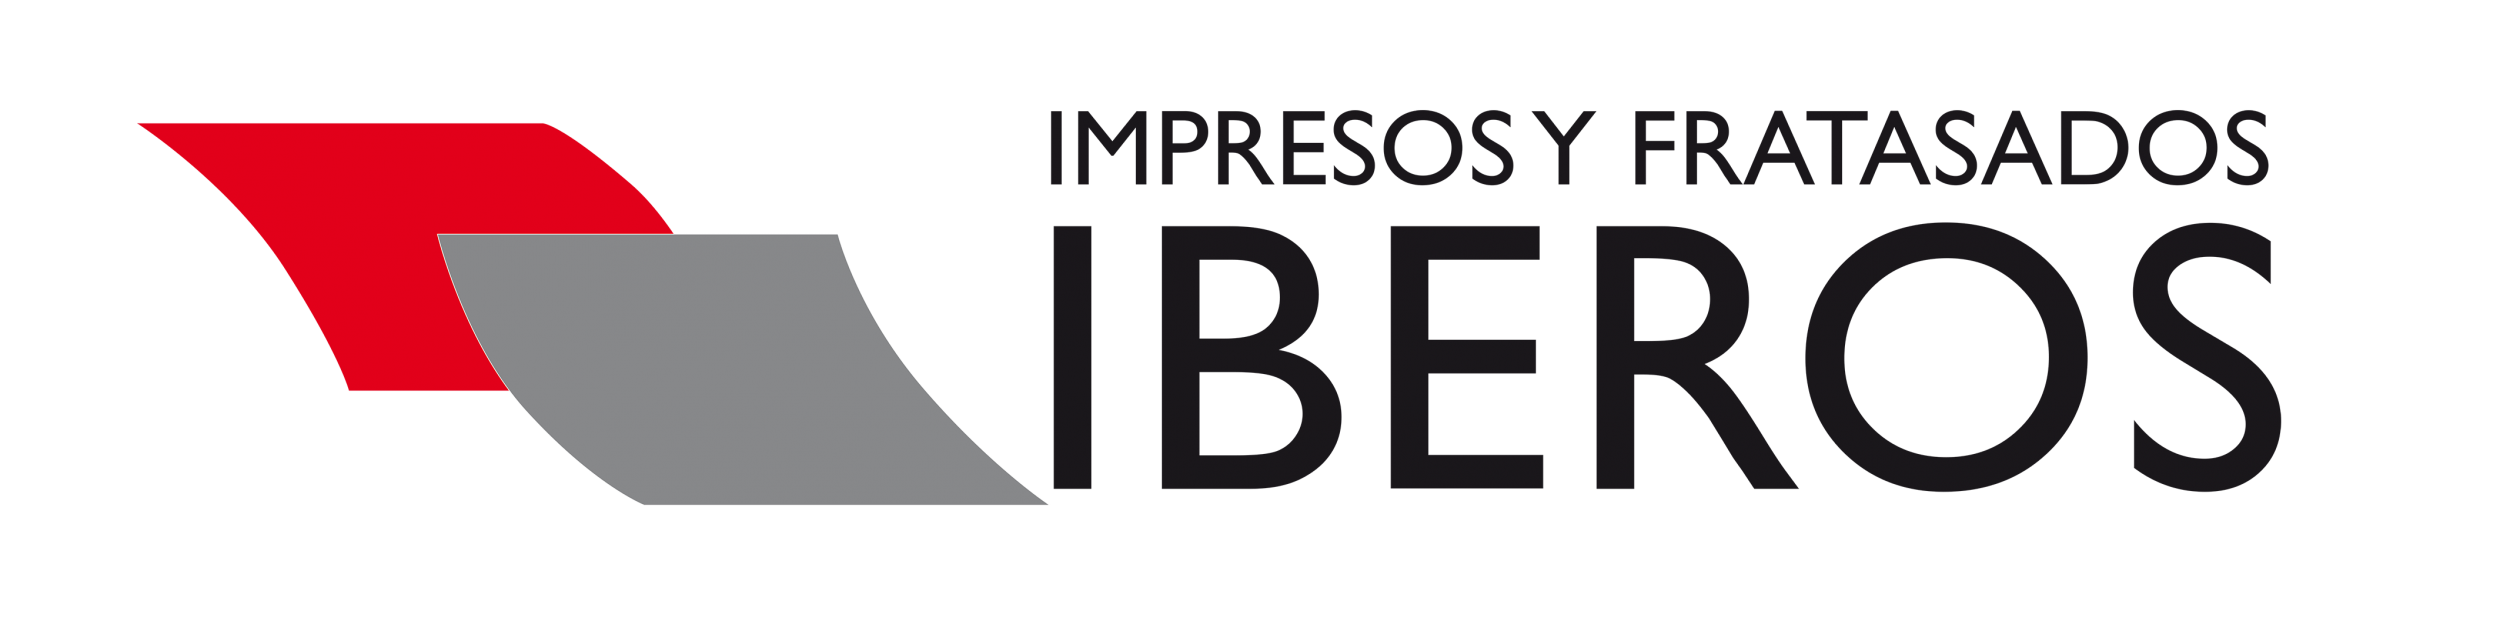 cropped-fratasados-iberos-logo1-e1594895136317